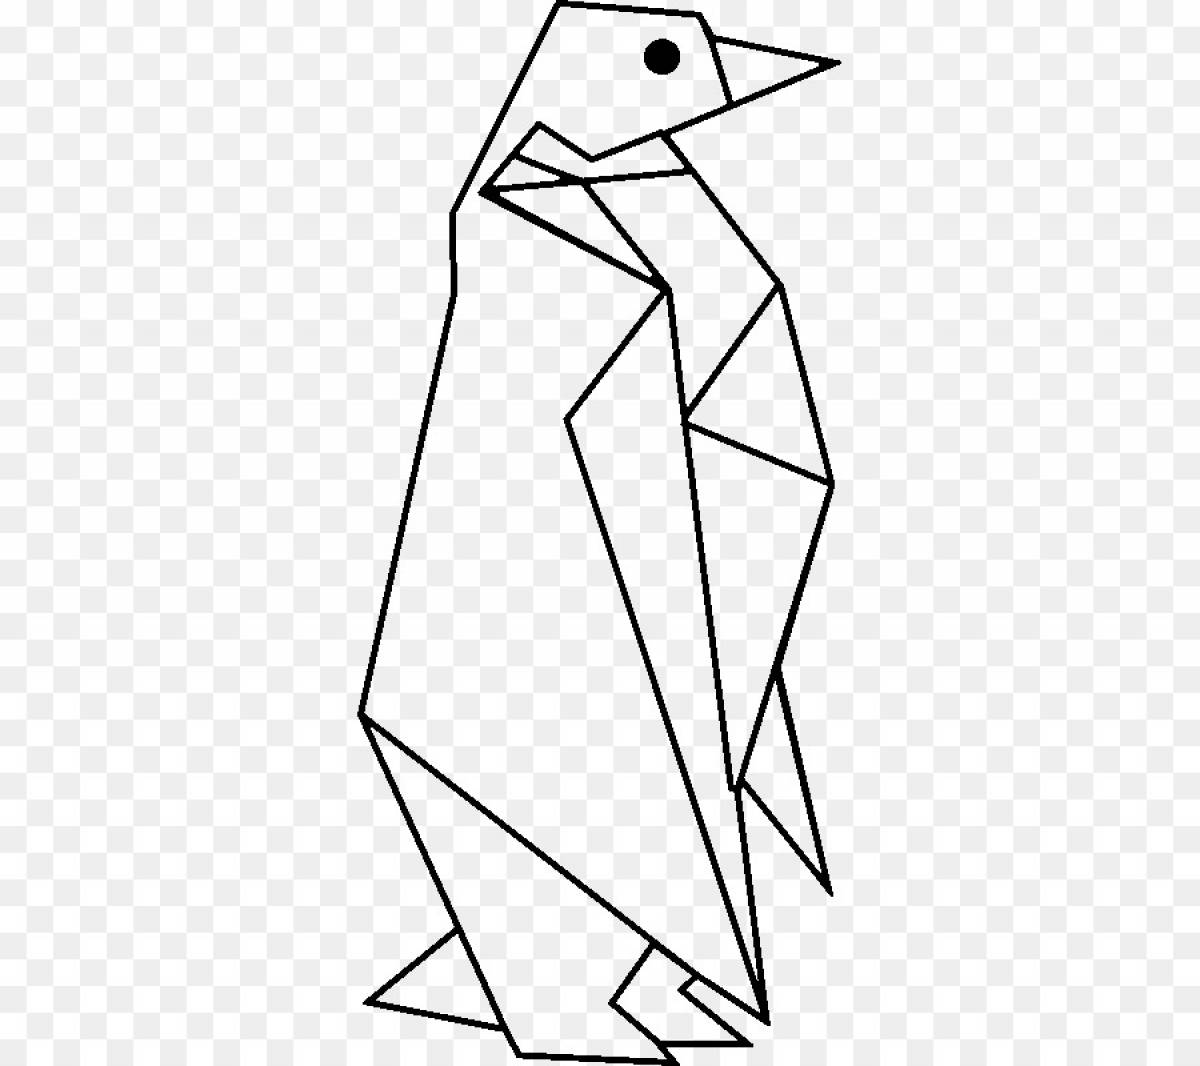 Рисунок животного из треугольников